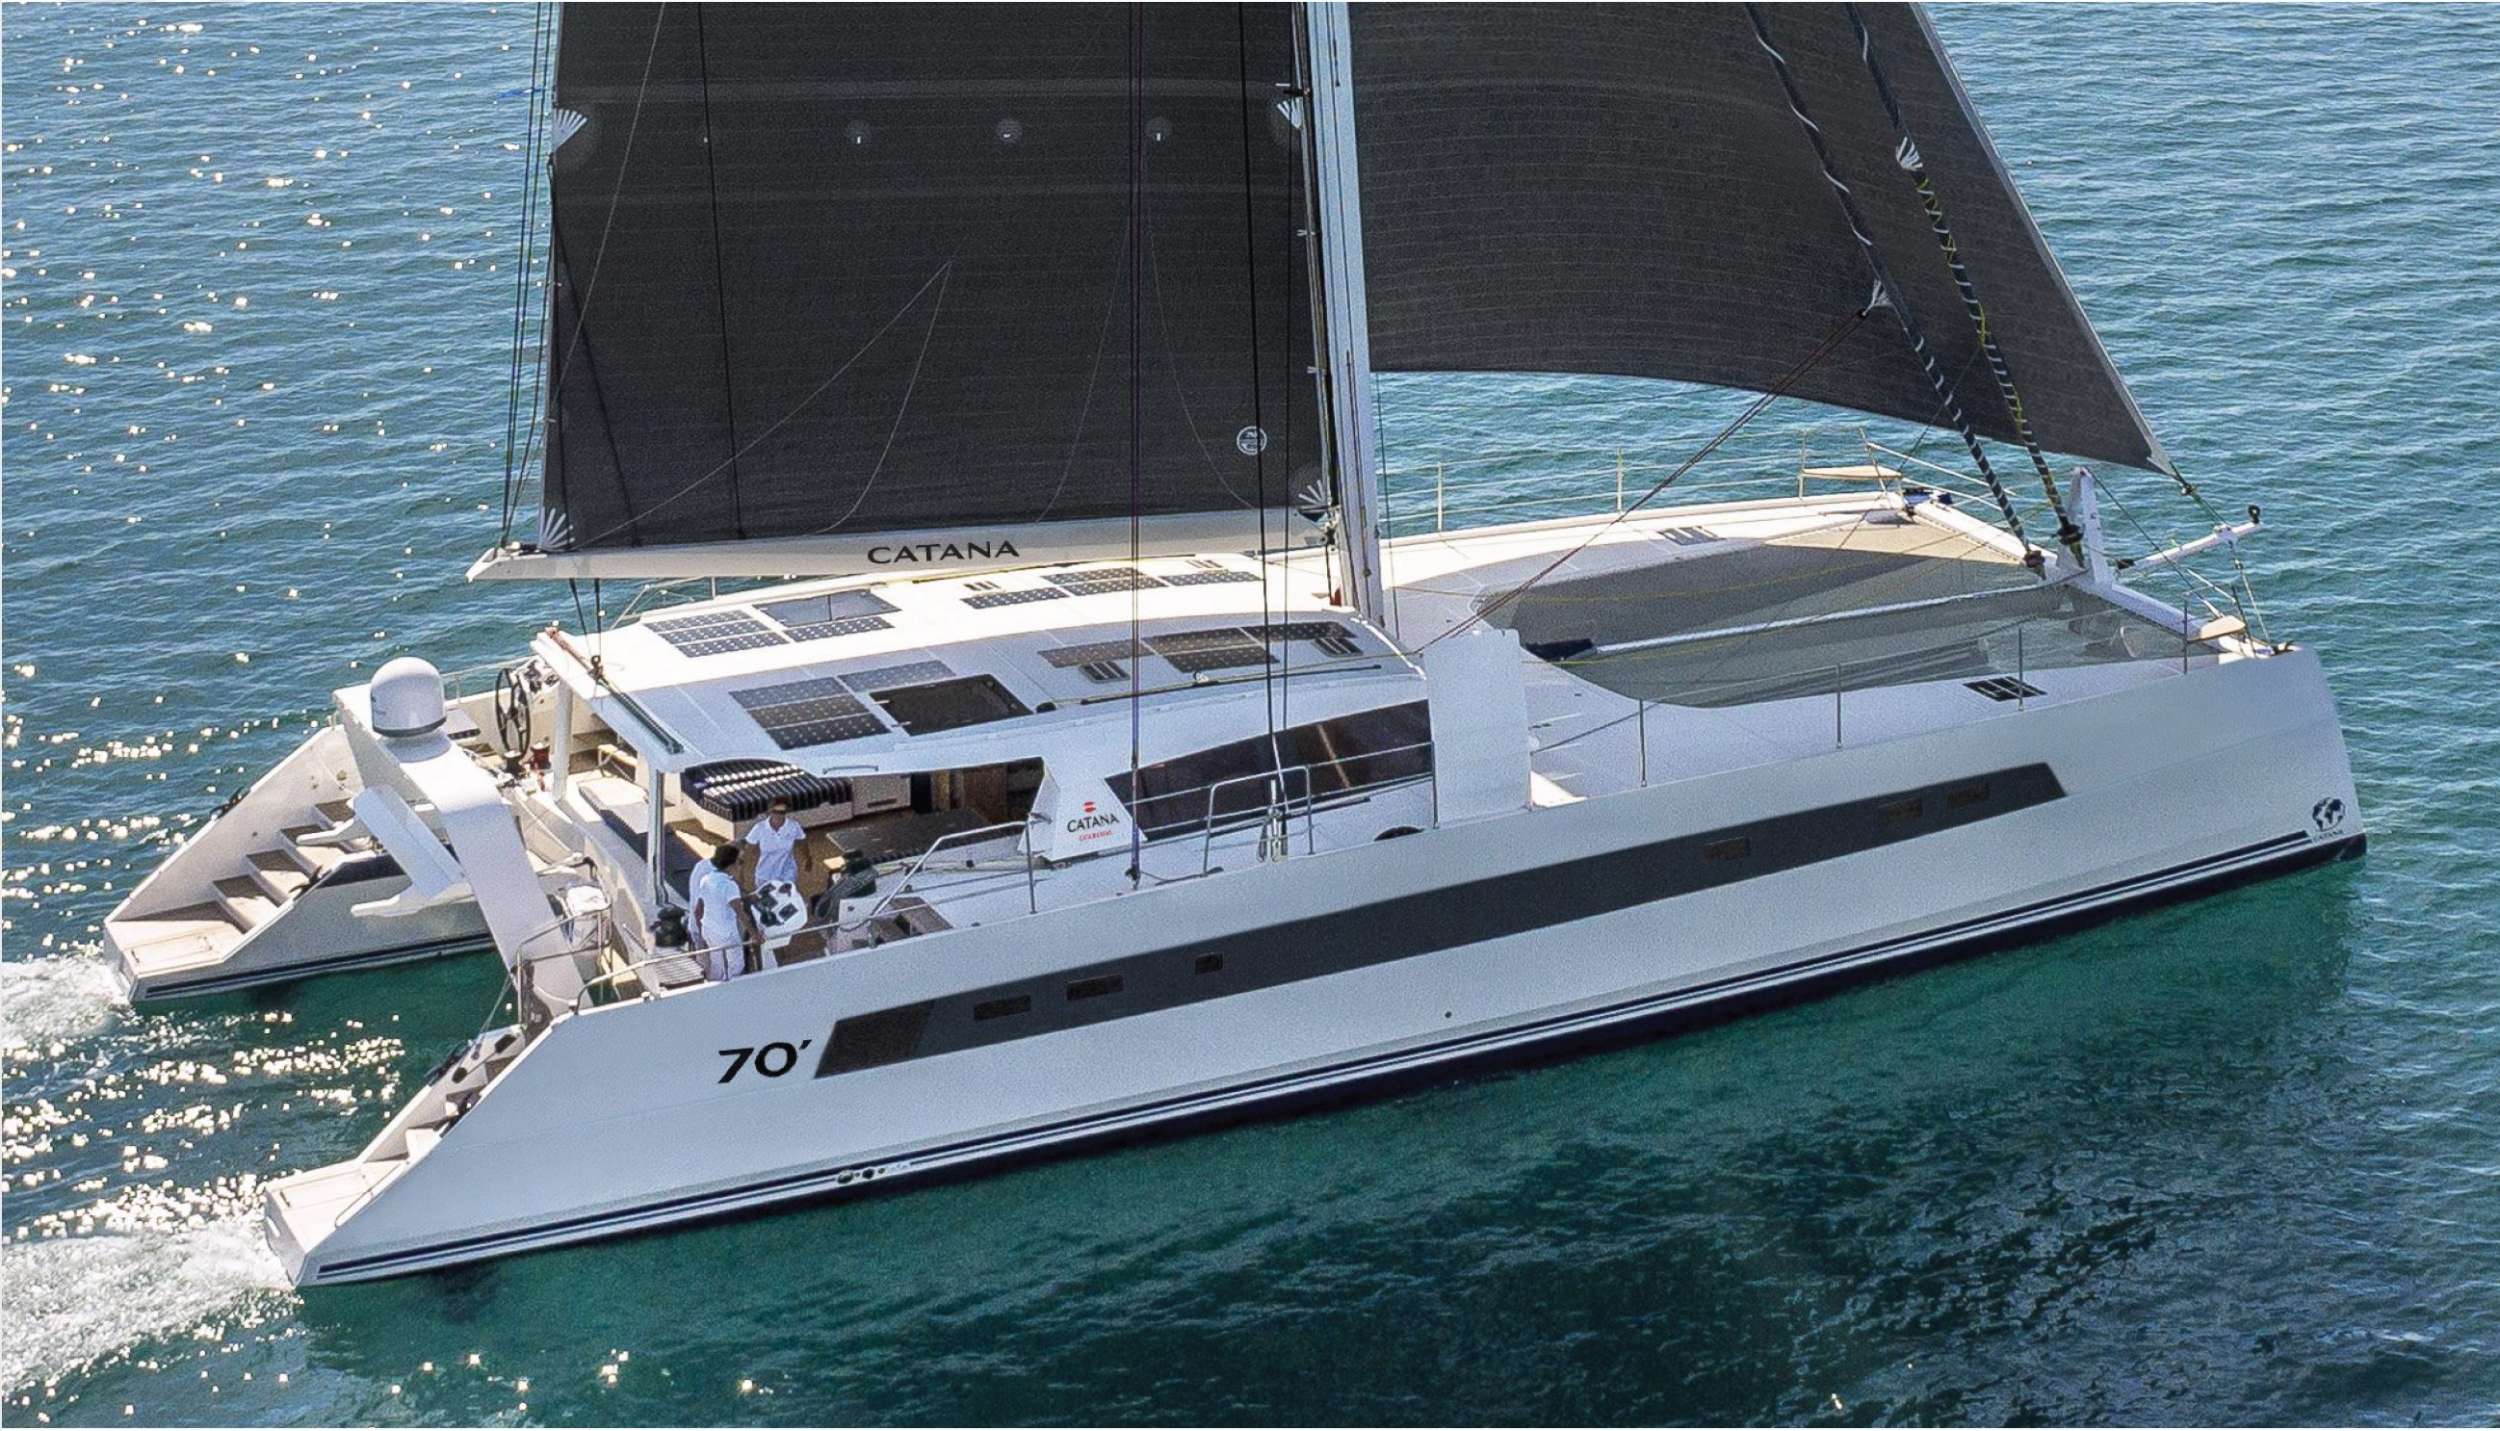 NEPTUNE - Yacht Charter Genoa & Boat hire in Fr. Riviera & Tyrrhenian Sea 1